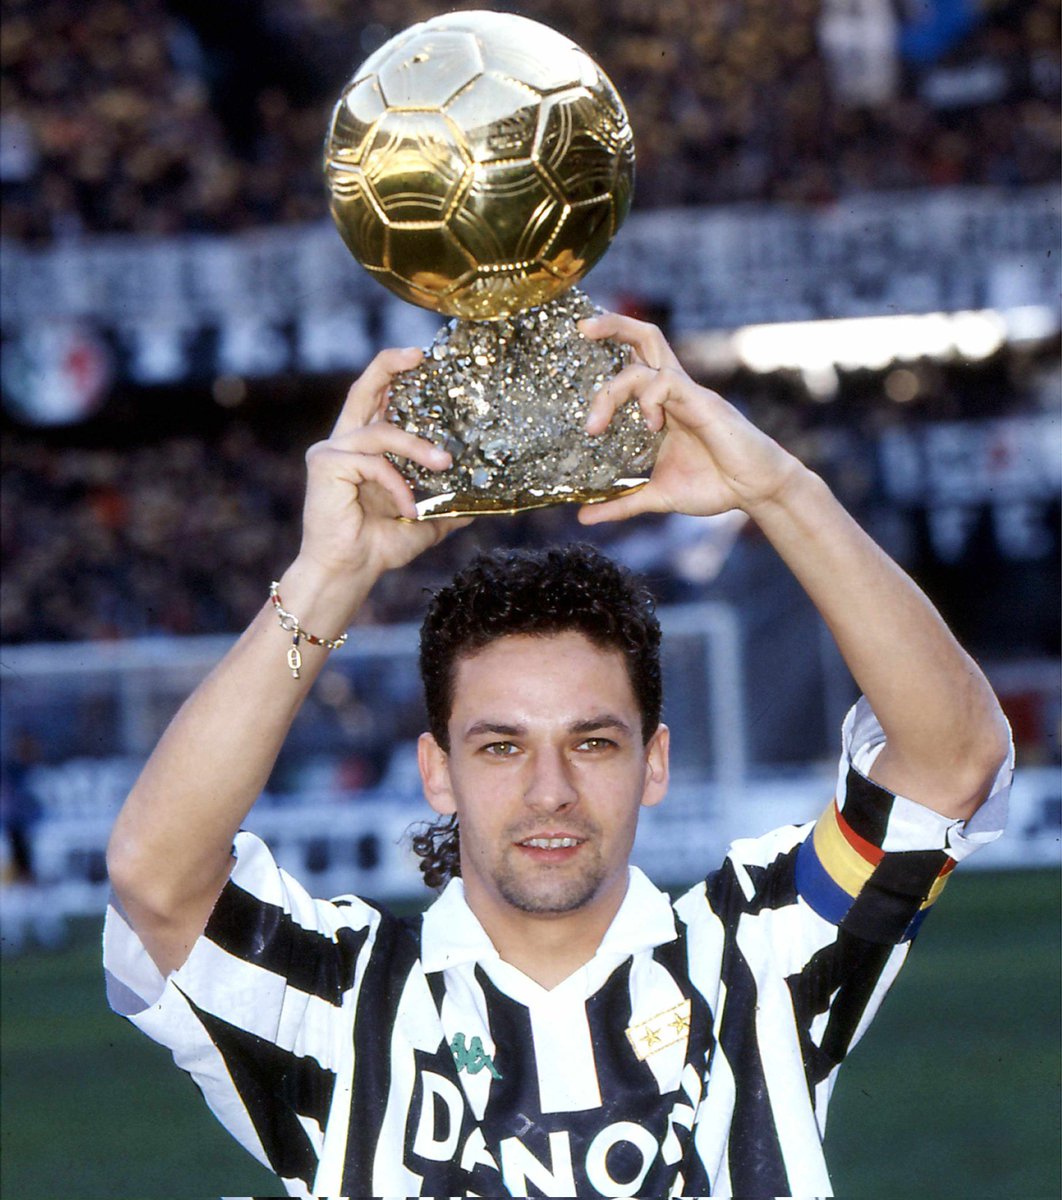 Oggi compie 56 anni il grande Roberto #Baggio 🇮🇹

I suoi numeri con la maglia della #juve:

✅ 200 partite
⚽ 115 gol
🅰️ 49 assist

🏆Pallone d'oro 1993
🏆Scudetto 1993
🏆Coppa UEFA 1993
🏆Coppa Italia 1995

#RobertoBaggio #juventus #Allegri #JUVFCN